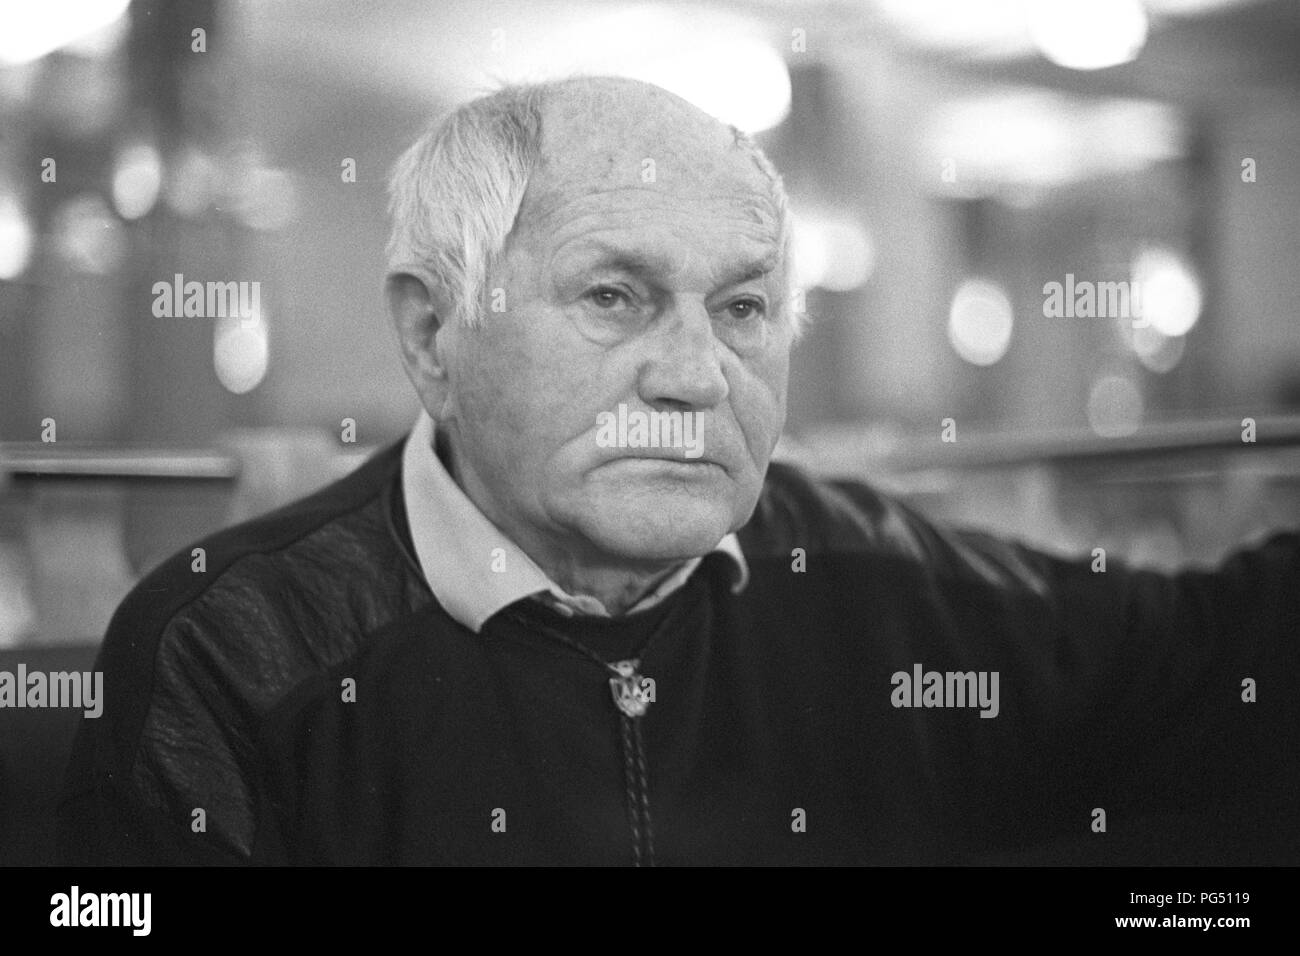 Der tschechische Schriftsteller Bohumil Hrabal an der Pariser Buchmesse - Salon du Livre Paris (Livre). Stockfoto